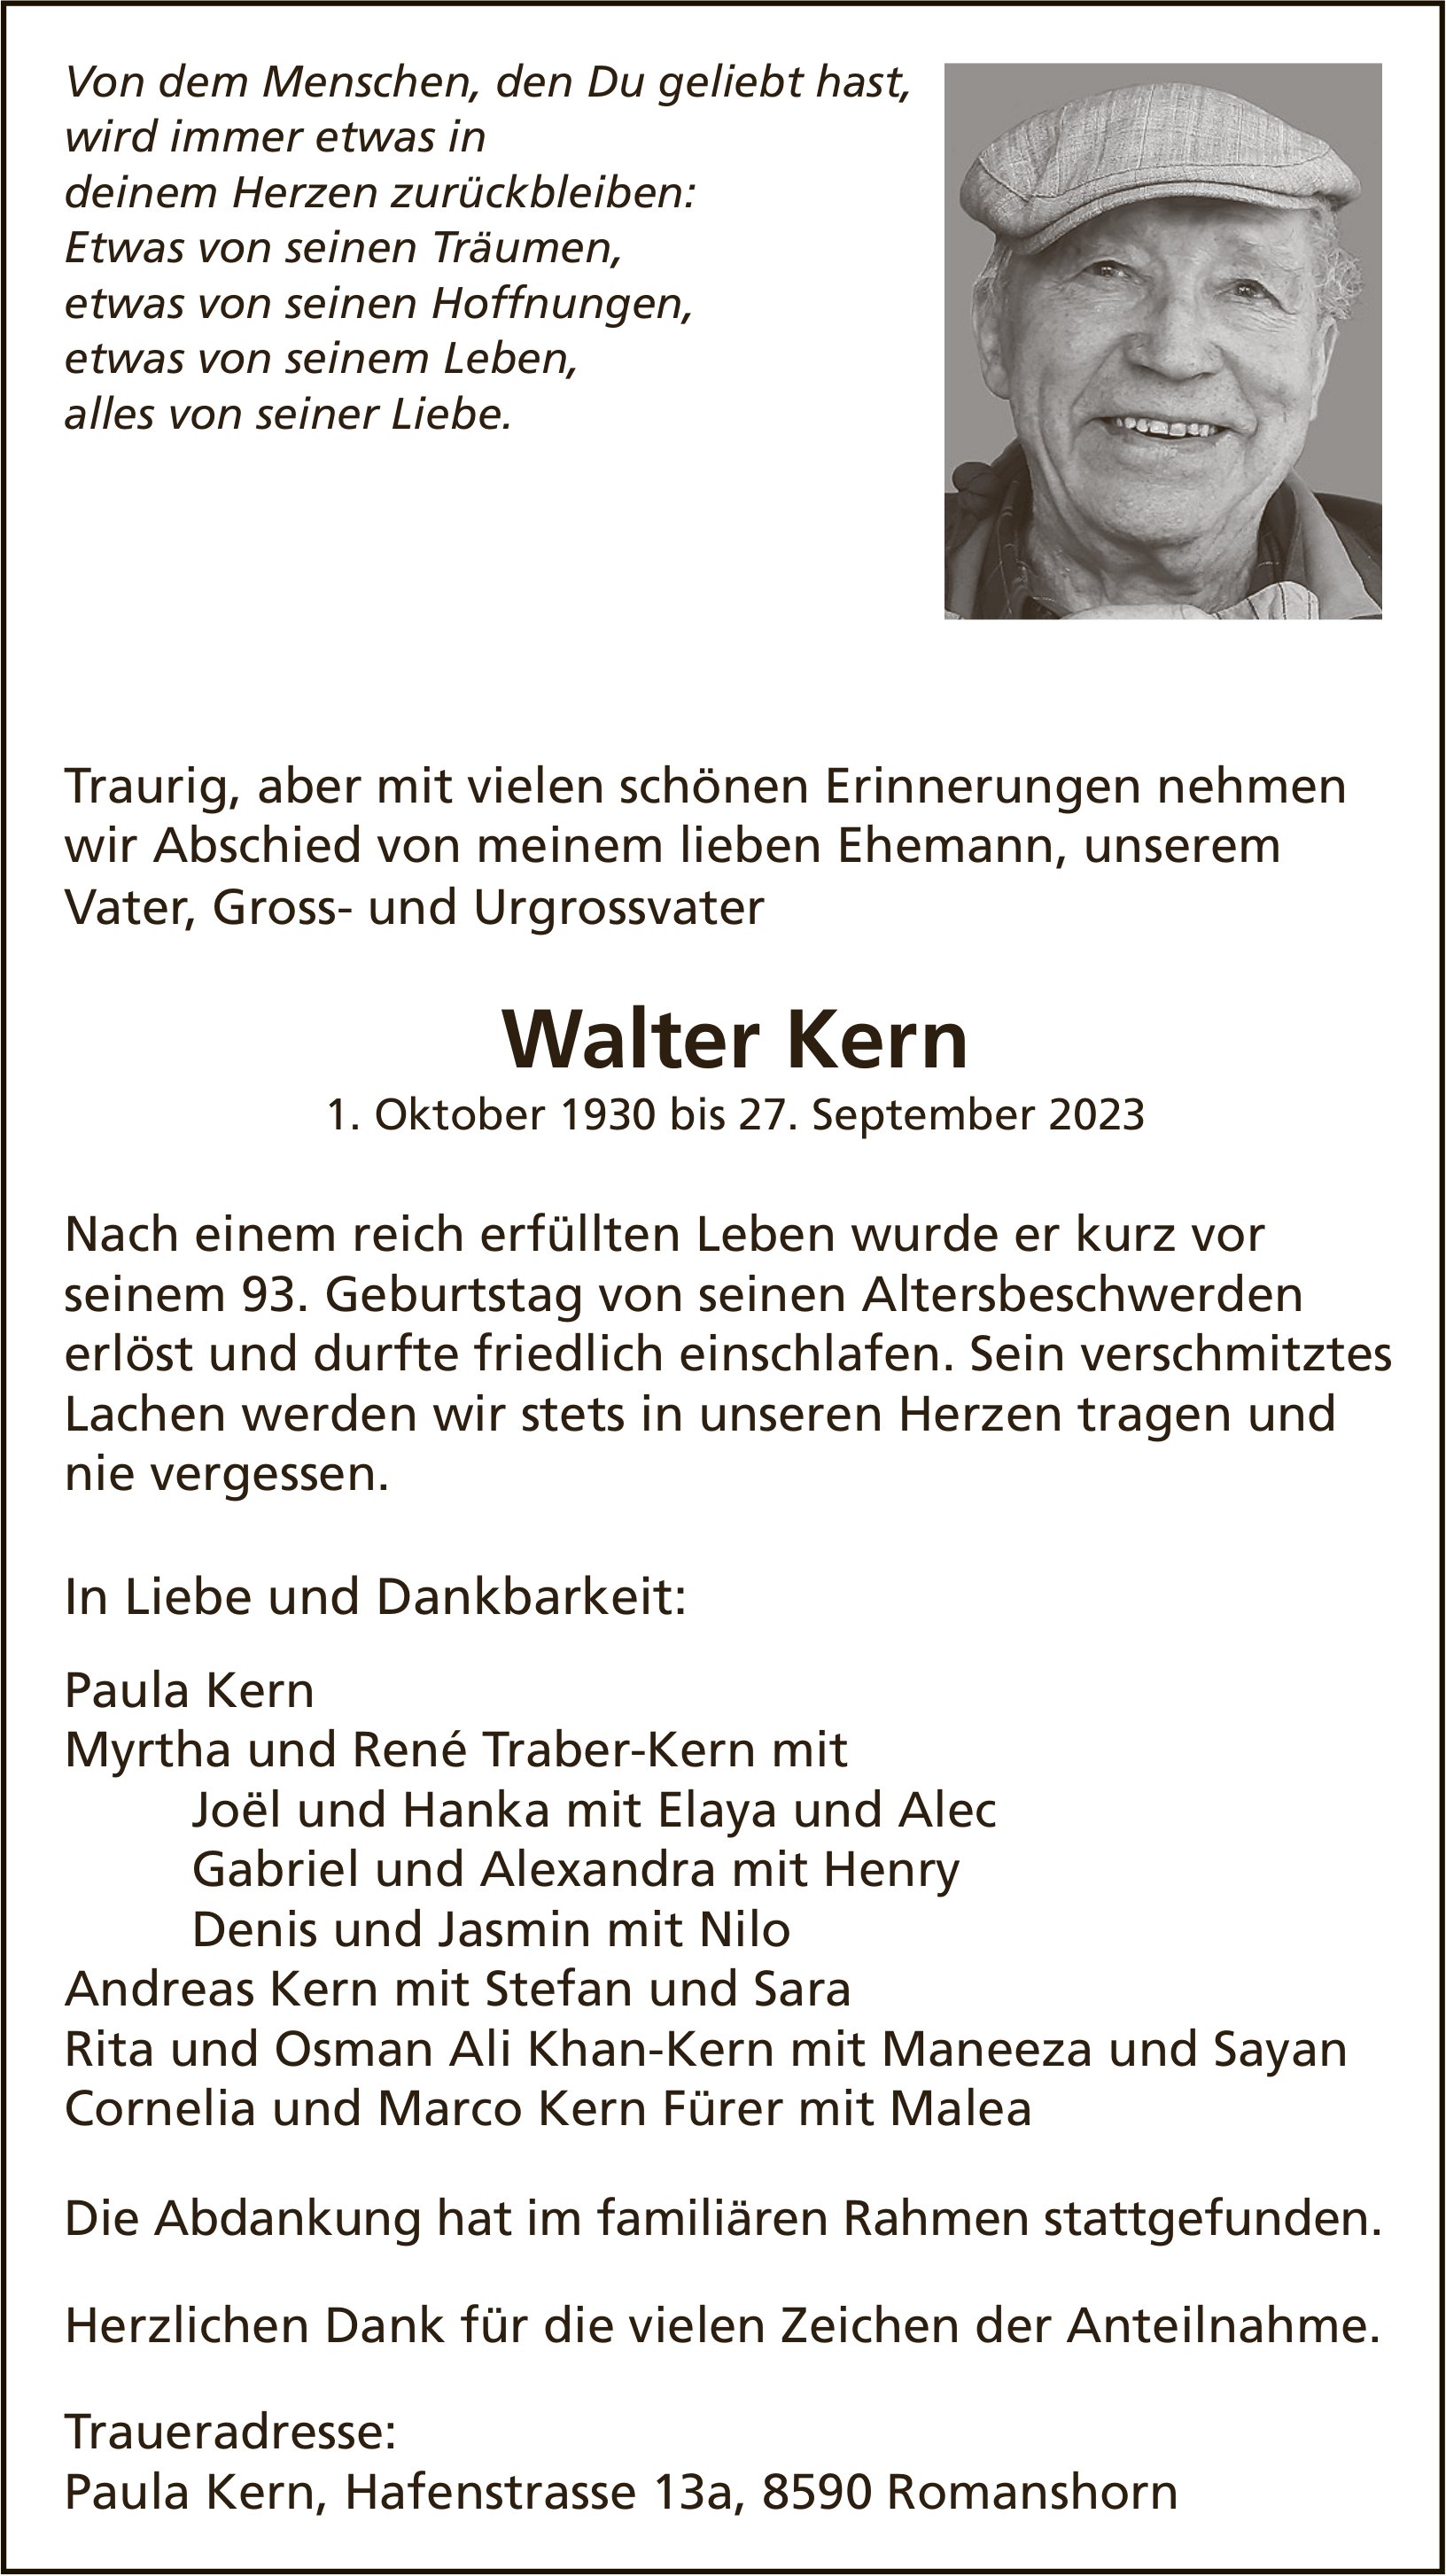 Walter Kern, September 2023 / TA